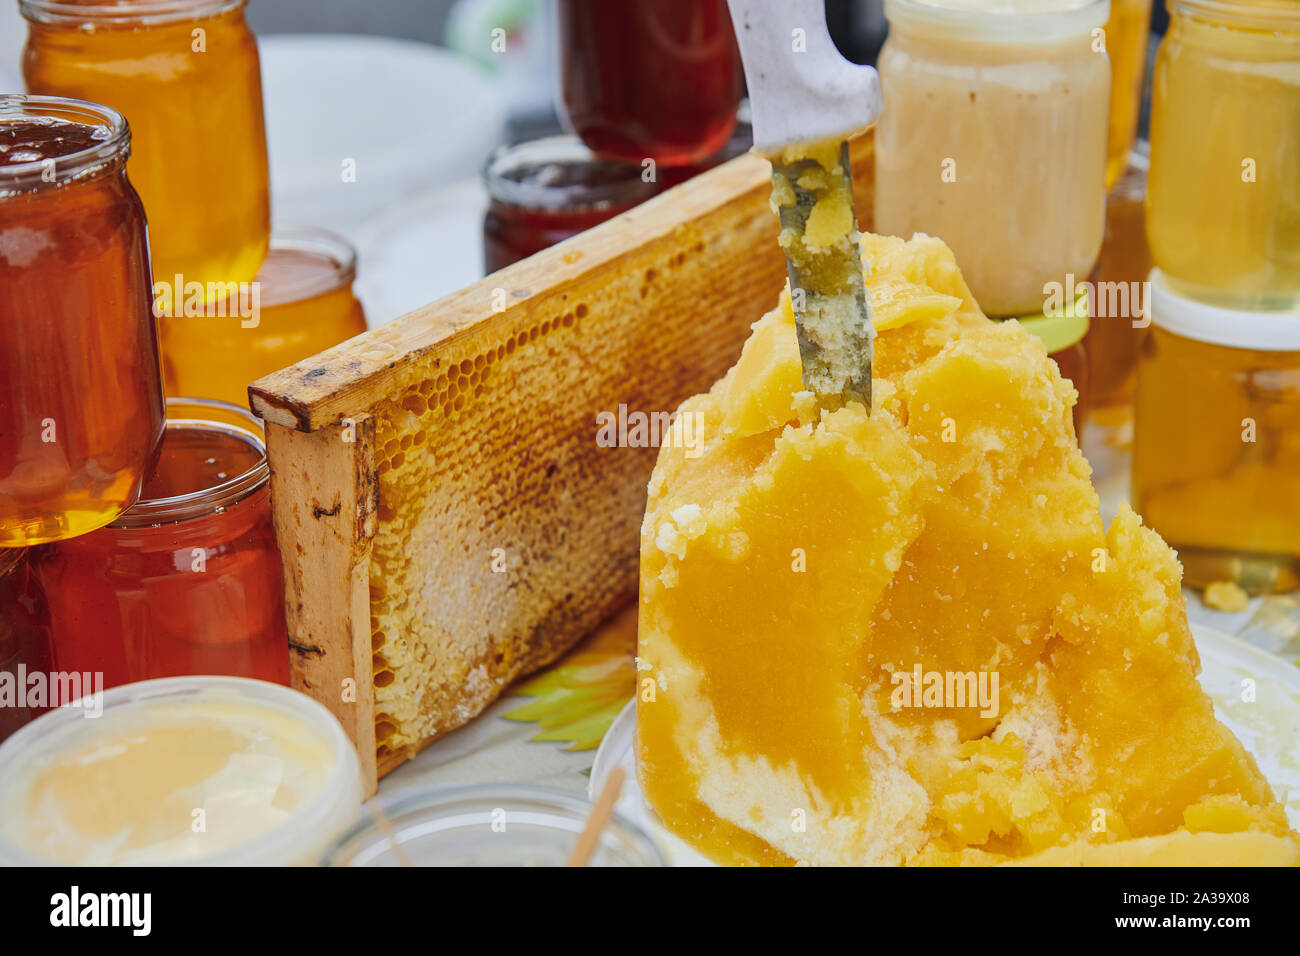 Eine Menge Honig Produkte auf dem Markt. Gläser mit verschiedenen Sorten von Honig. Das Messer ragt aus Honig. Honey Farm Produkte. Stockfoto